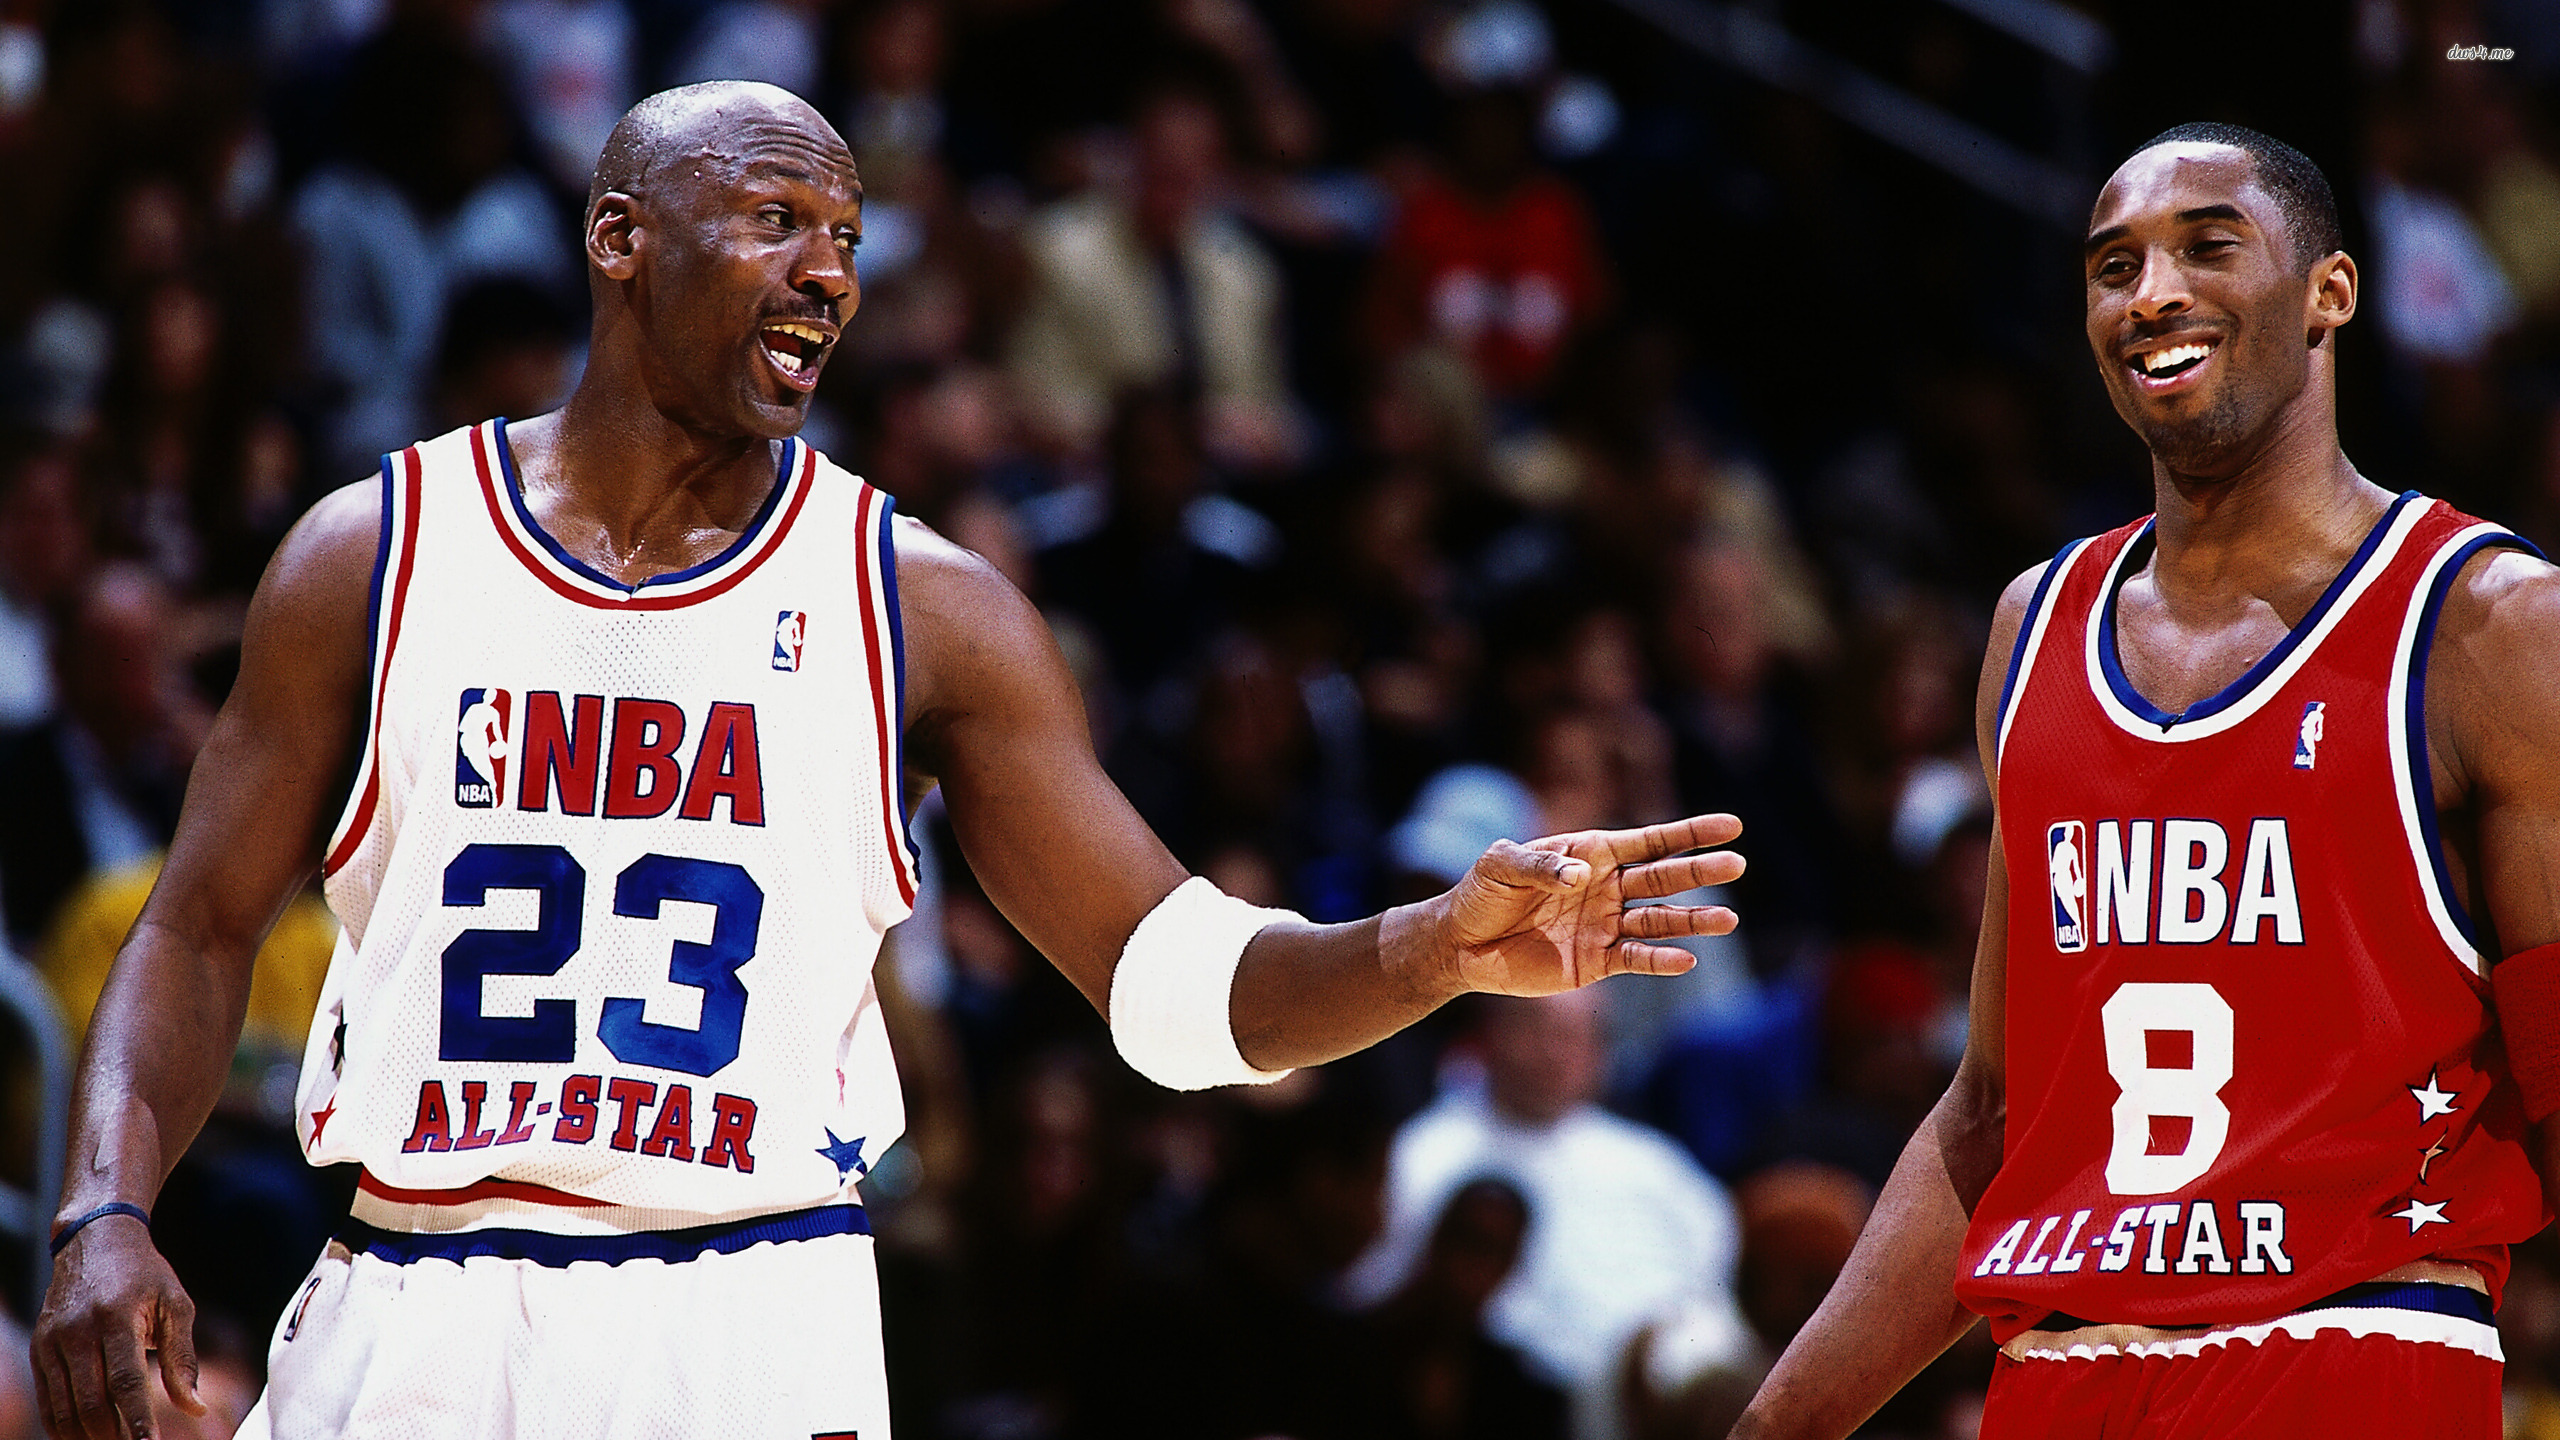 Kobe Bryant and Michael Jordan wallpaper wallpaper